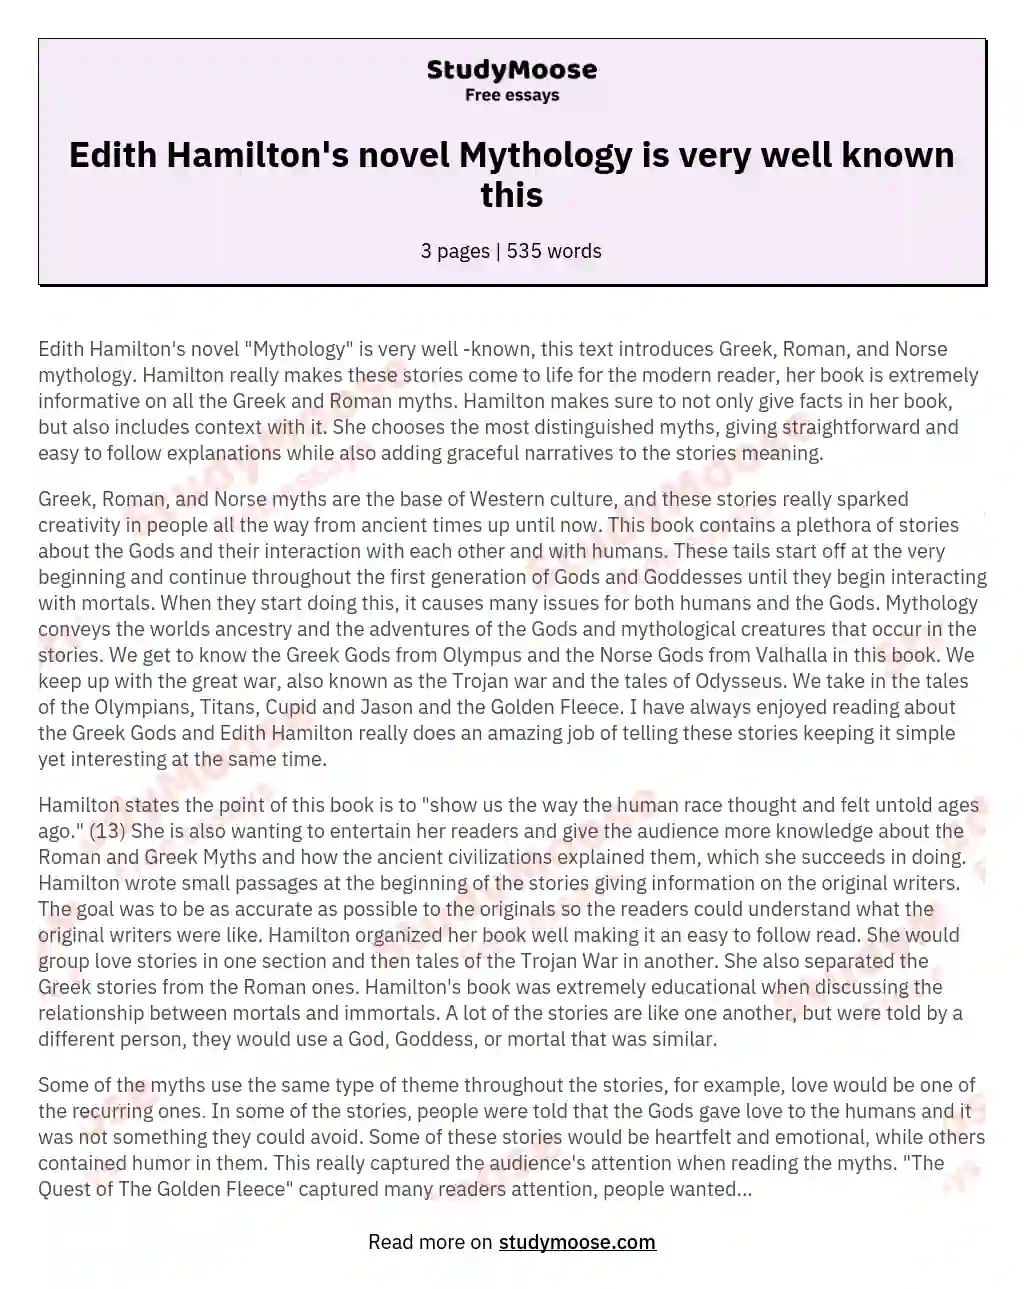 Edith Hamilton's novel Mythology is very well known this essay